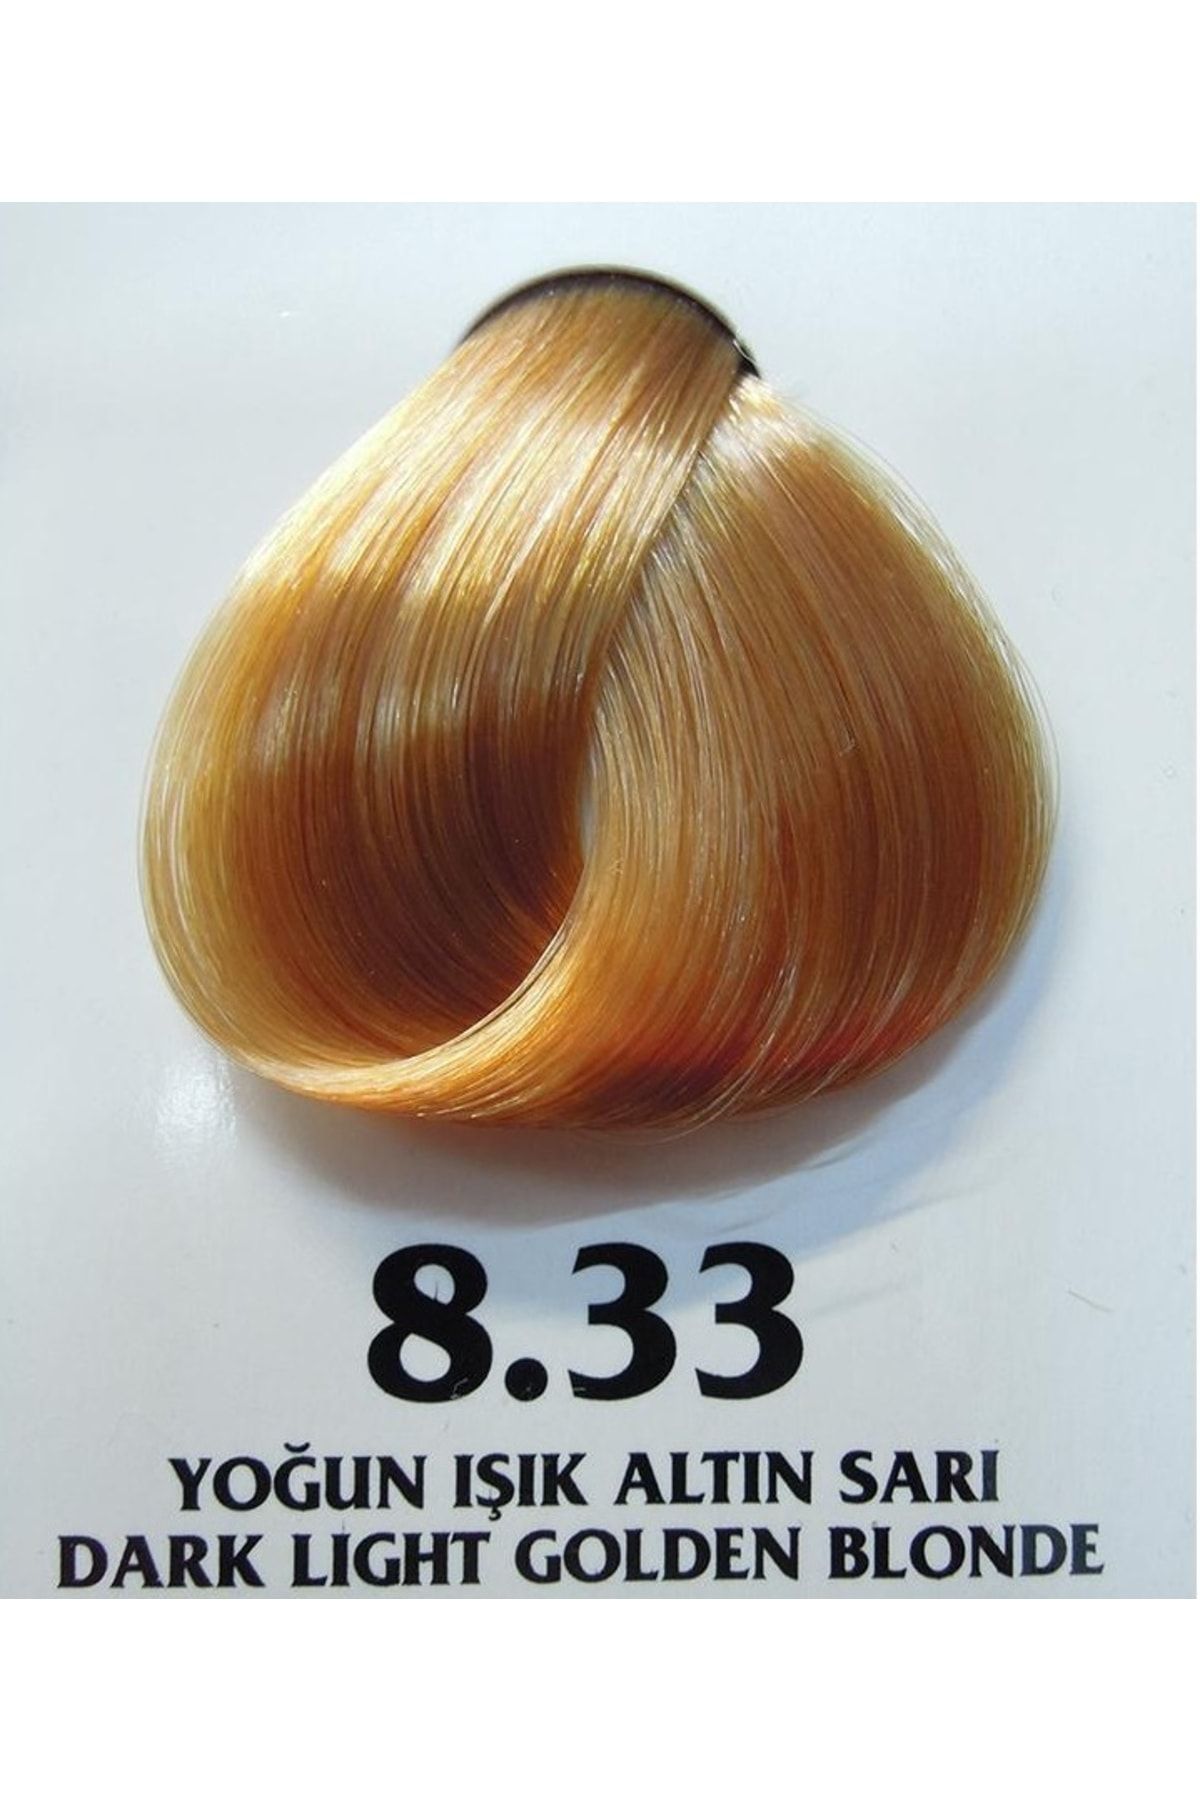 Clemency Farmavita Saç Boyası Yoğun Işık Altın Sarı 8.33 60gr.